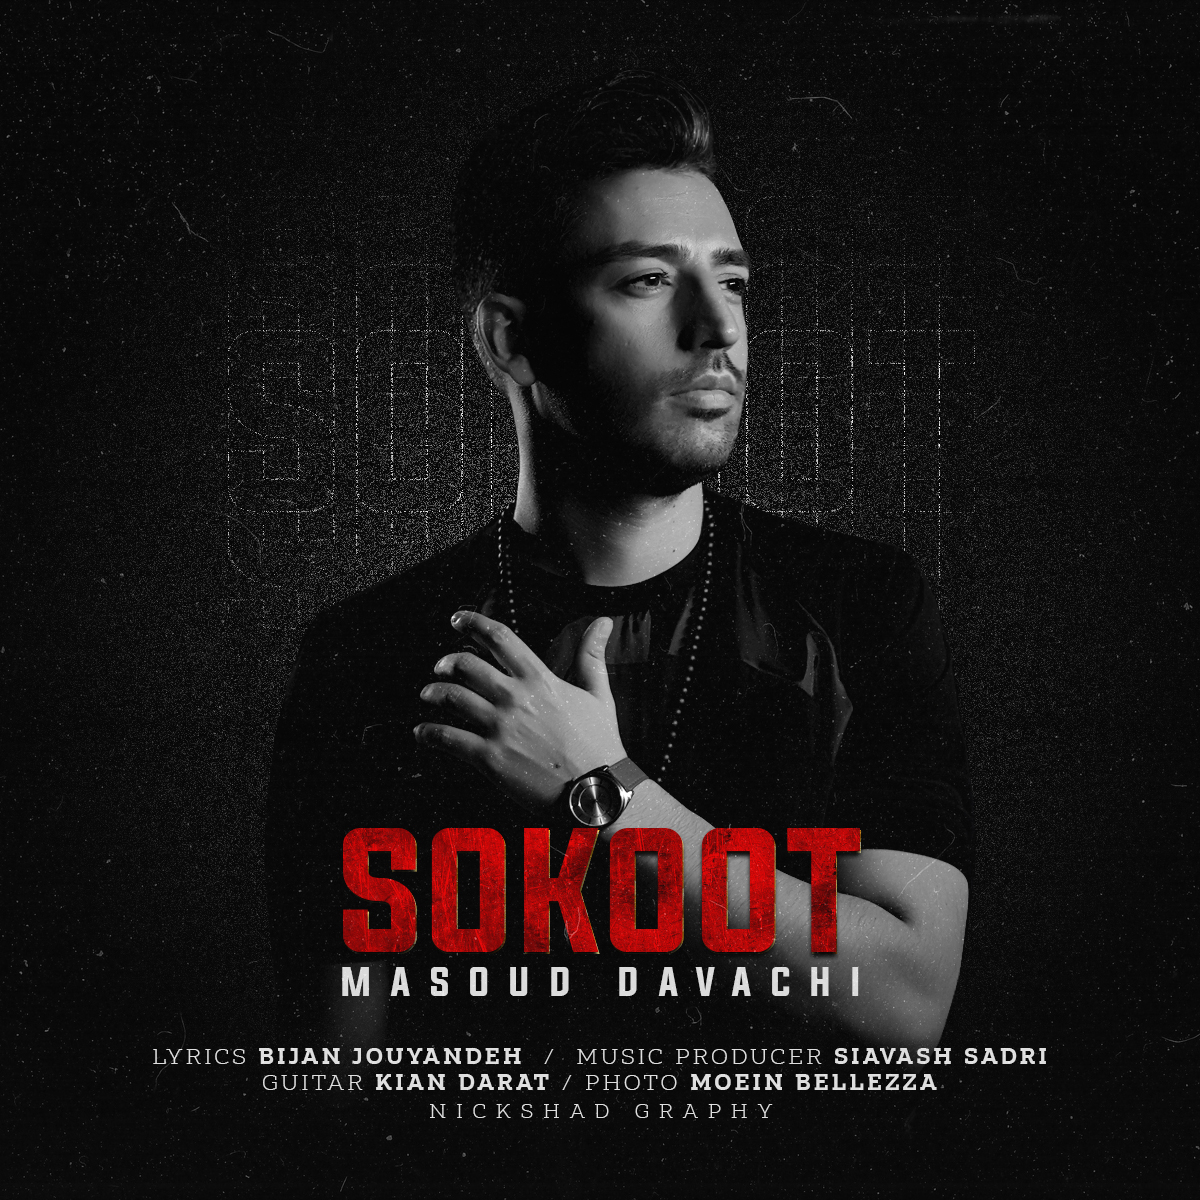 Masoud Davachi – Sokoot